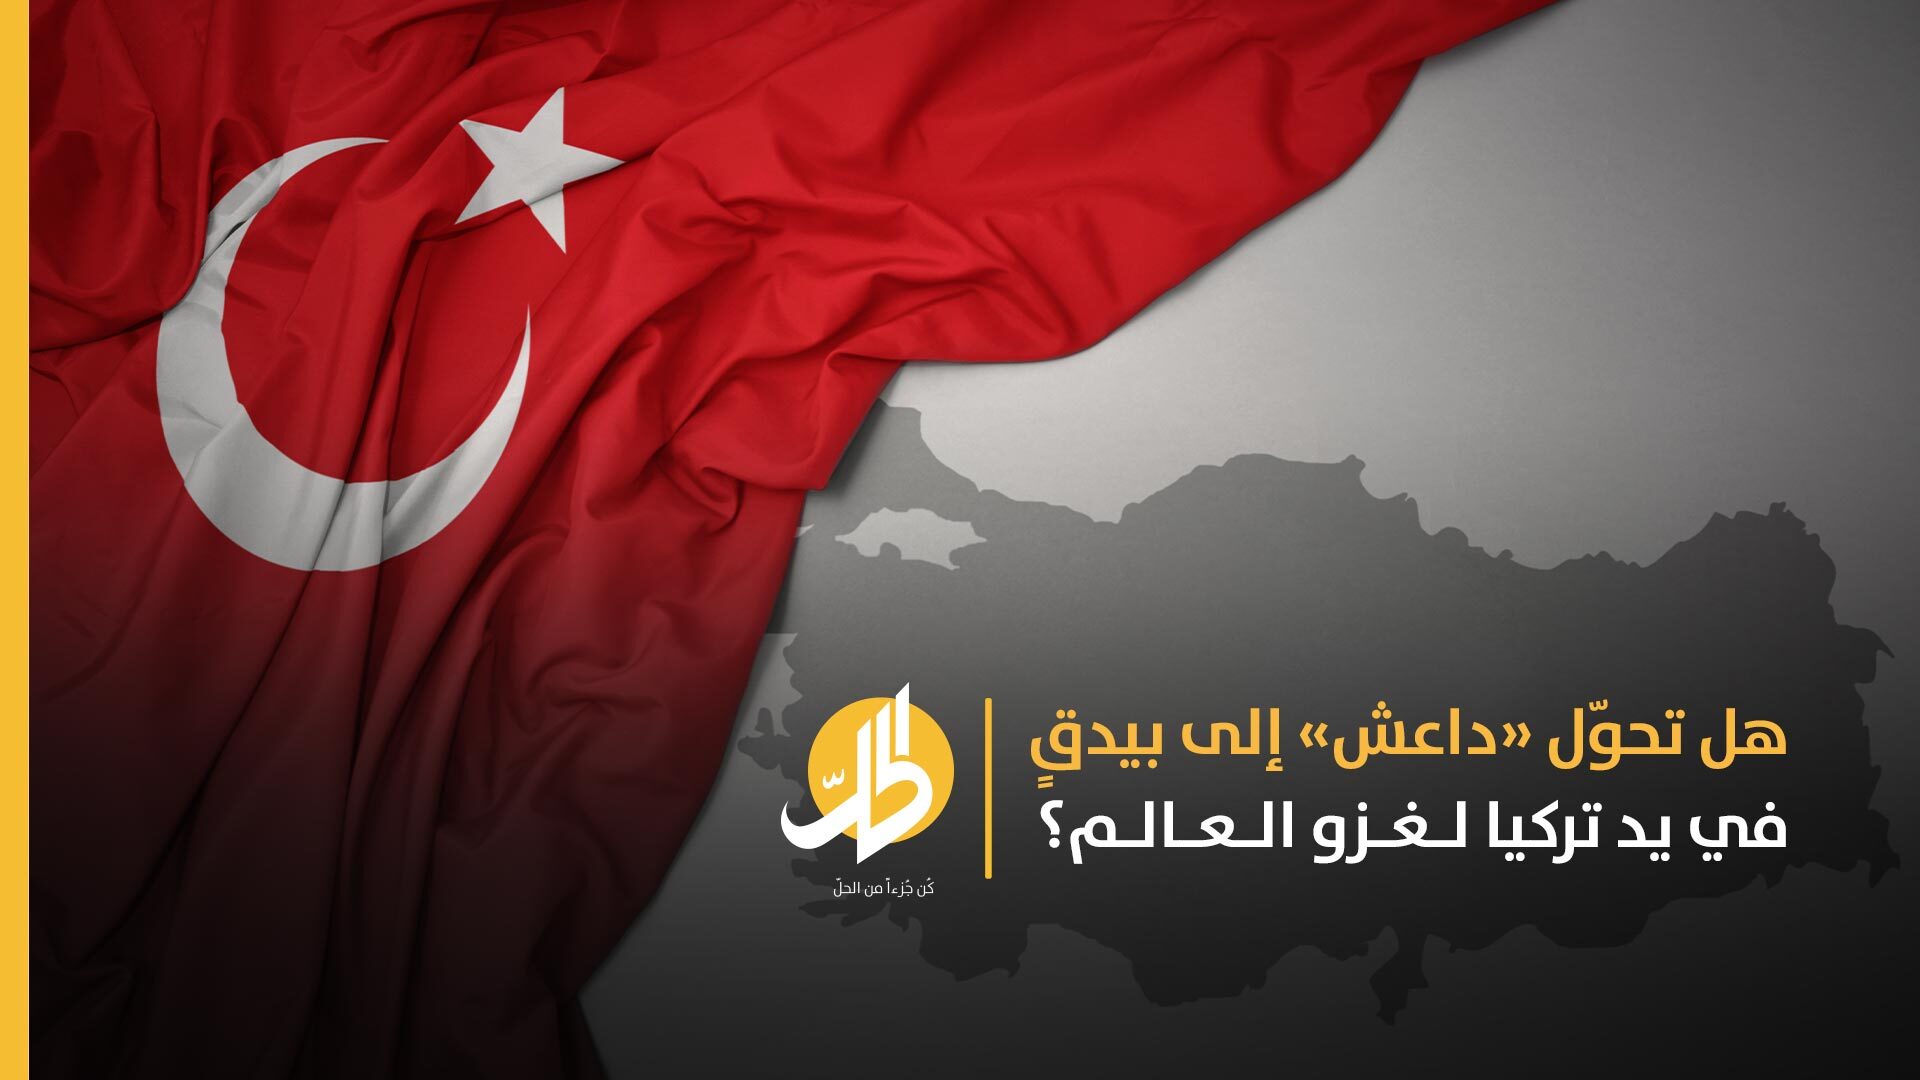 تركيا وأشباحُ «داعش».. علاقةٌ لإنعاش التَّنظيم وتنفيذ مخطّطات أنقرة في سوريا وتهديد باقي الدول